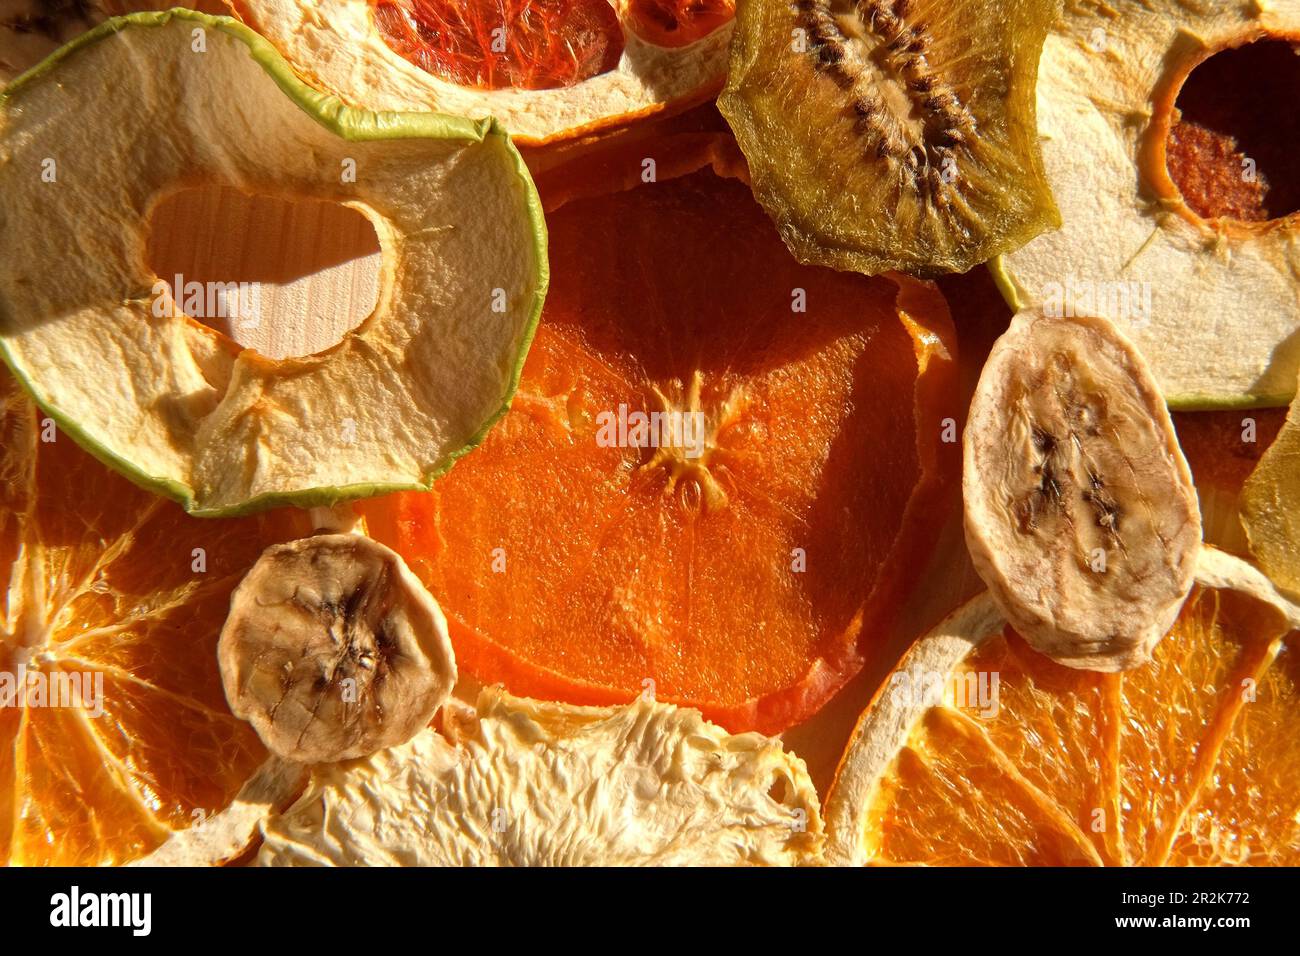 Fruits secs. Assortiment de fruits biologiques séchés au soleil sur fond de bois. Grignotage et cuisson. Mélange tendance de fruits secs et confits sli Banque D'Images